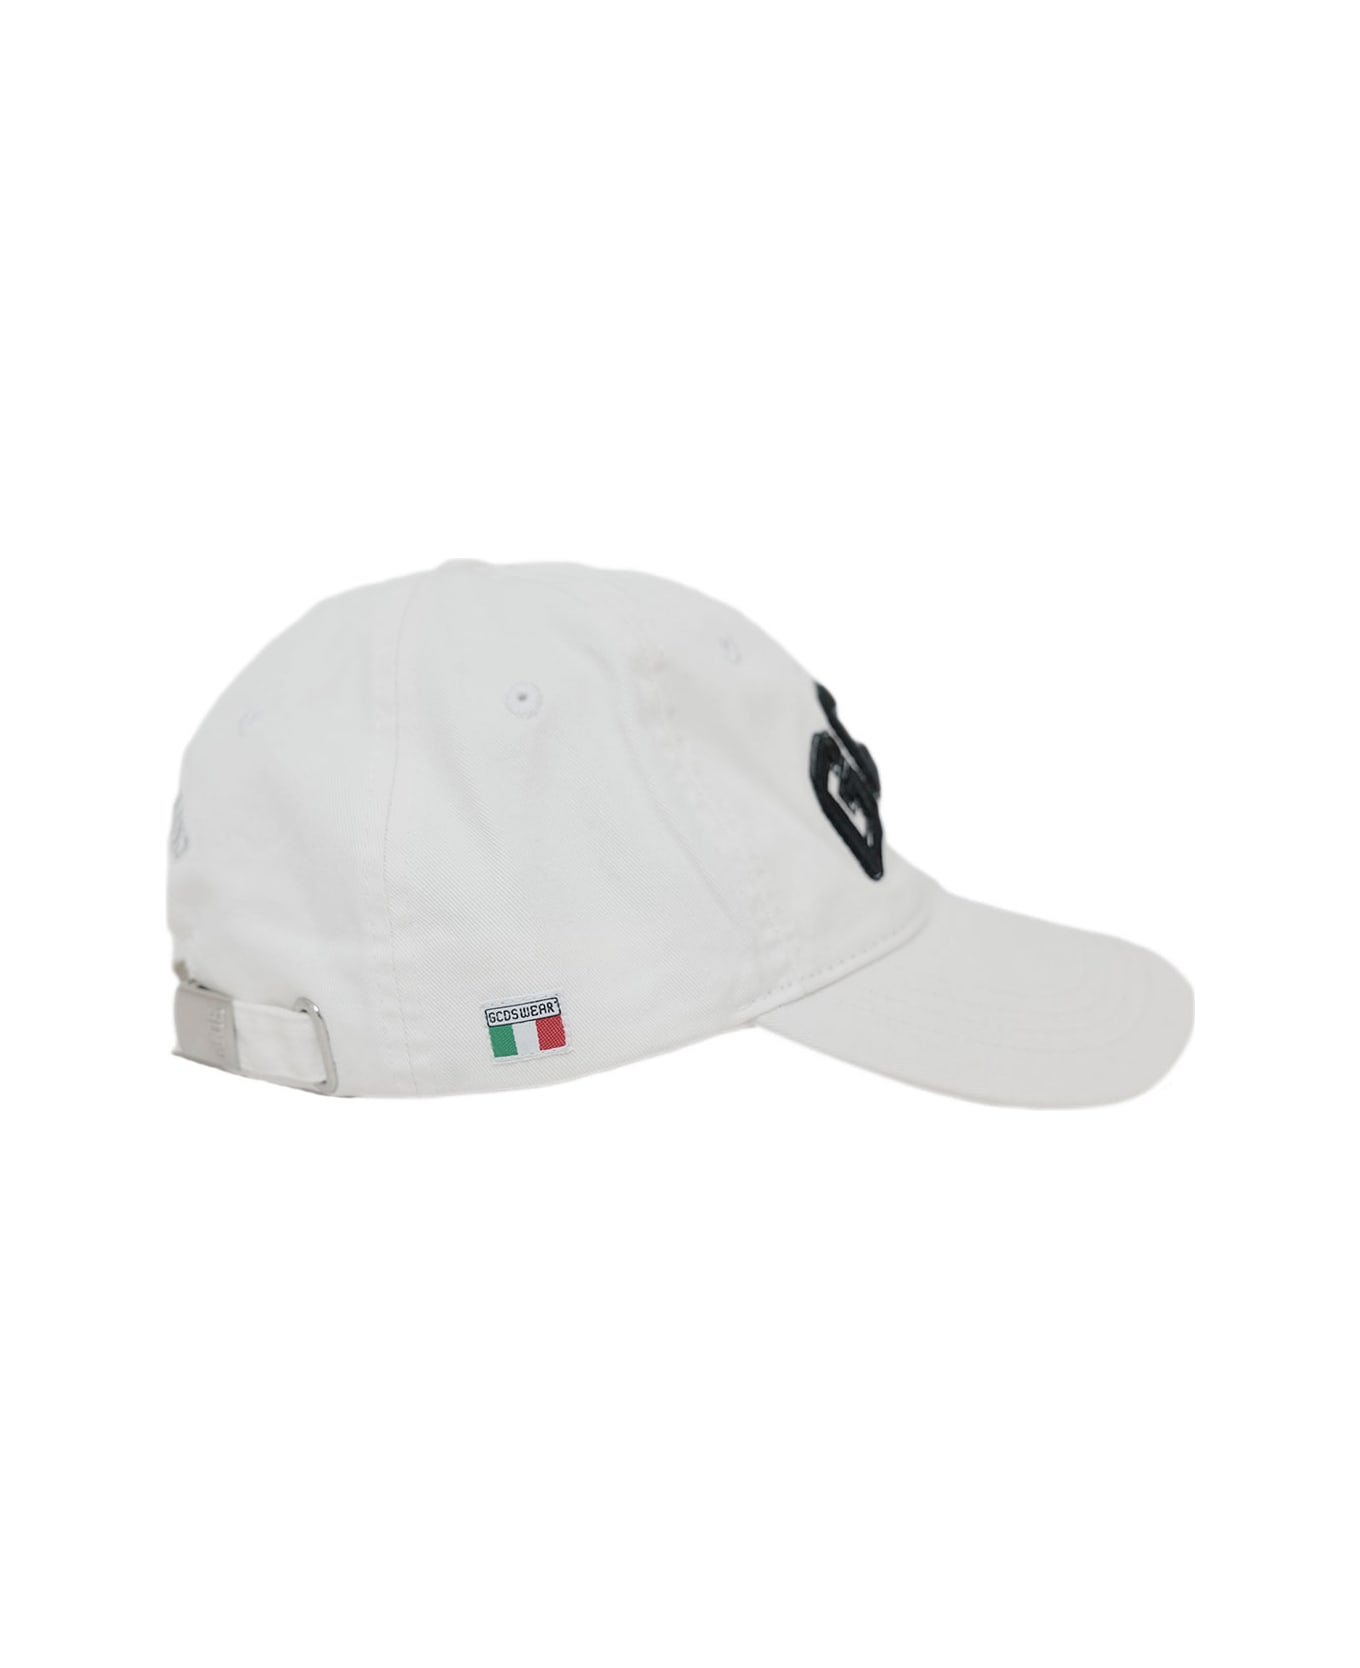 GCDS Hat - White 帽子